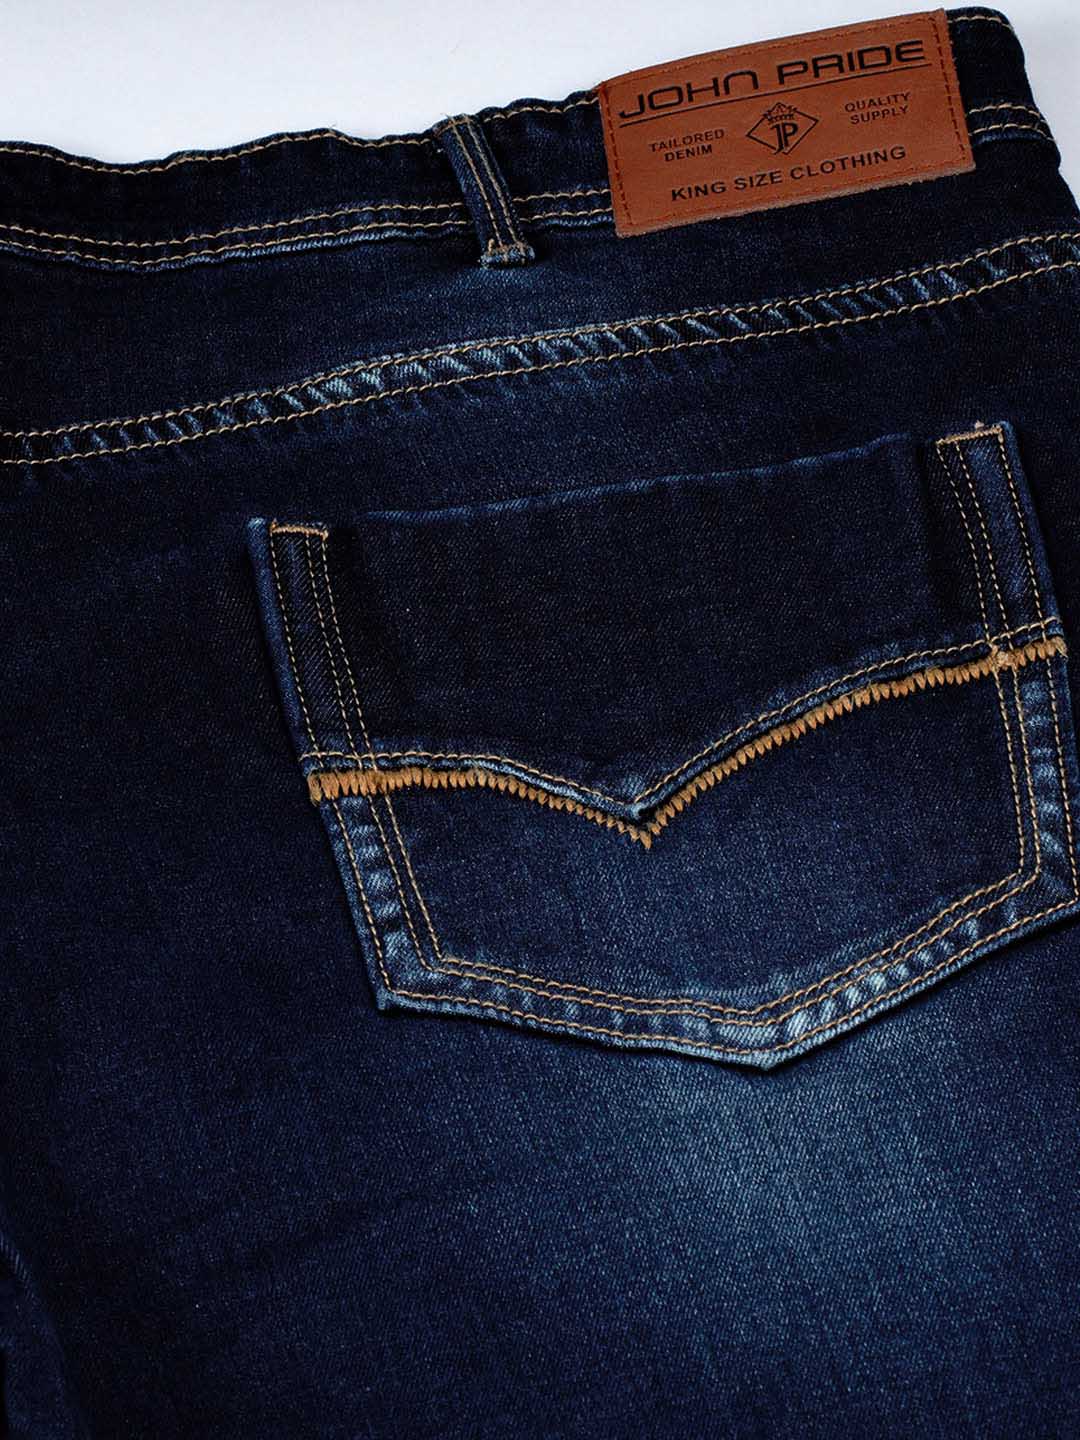 bottomwear/jeans/JPJ12113/jpj12113-5.jpg